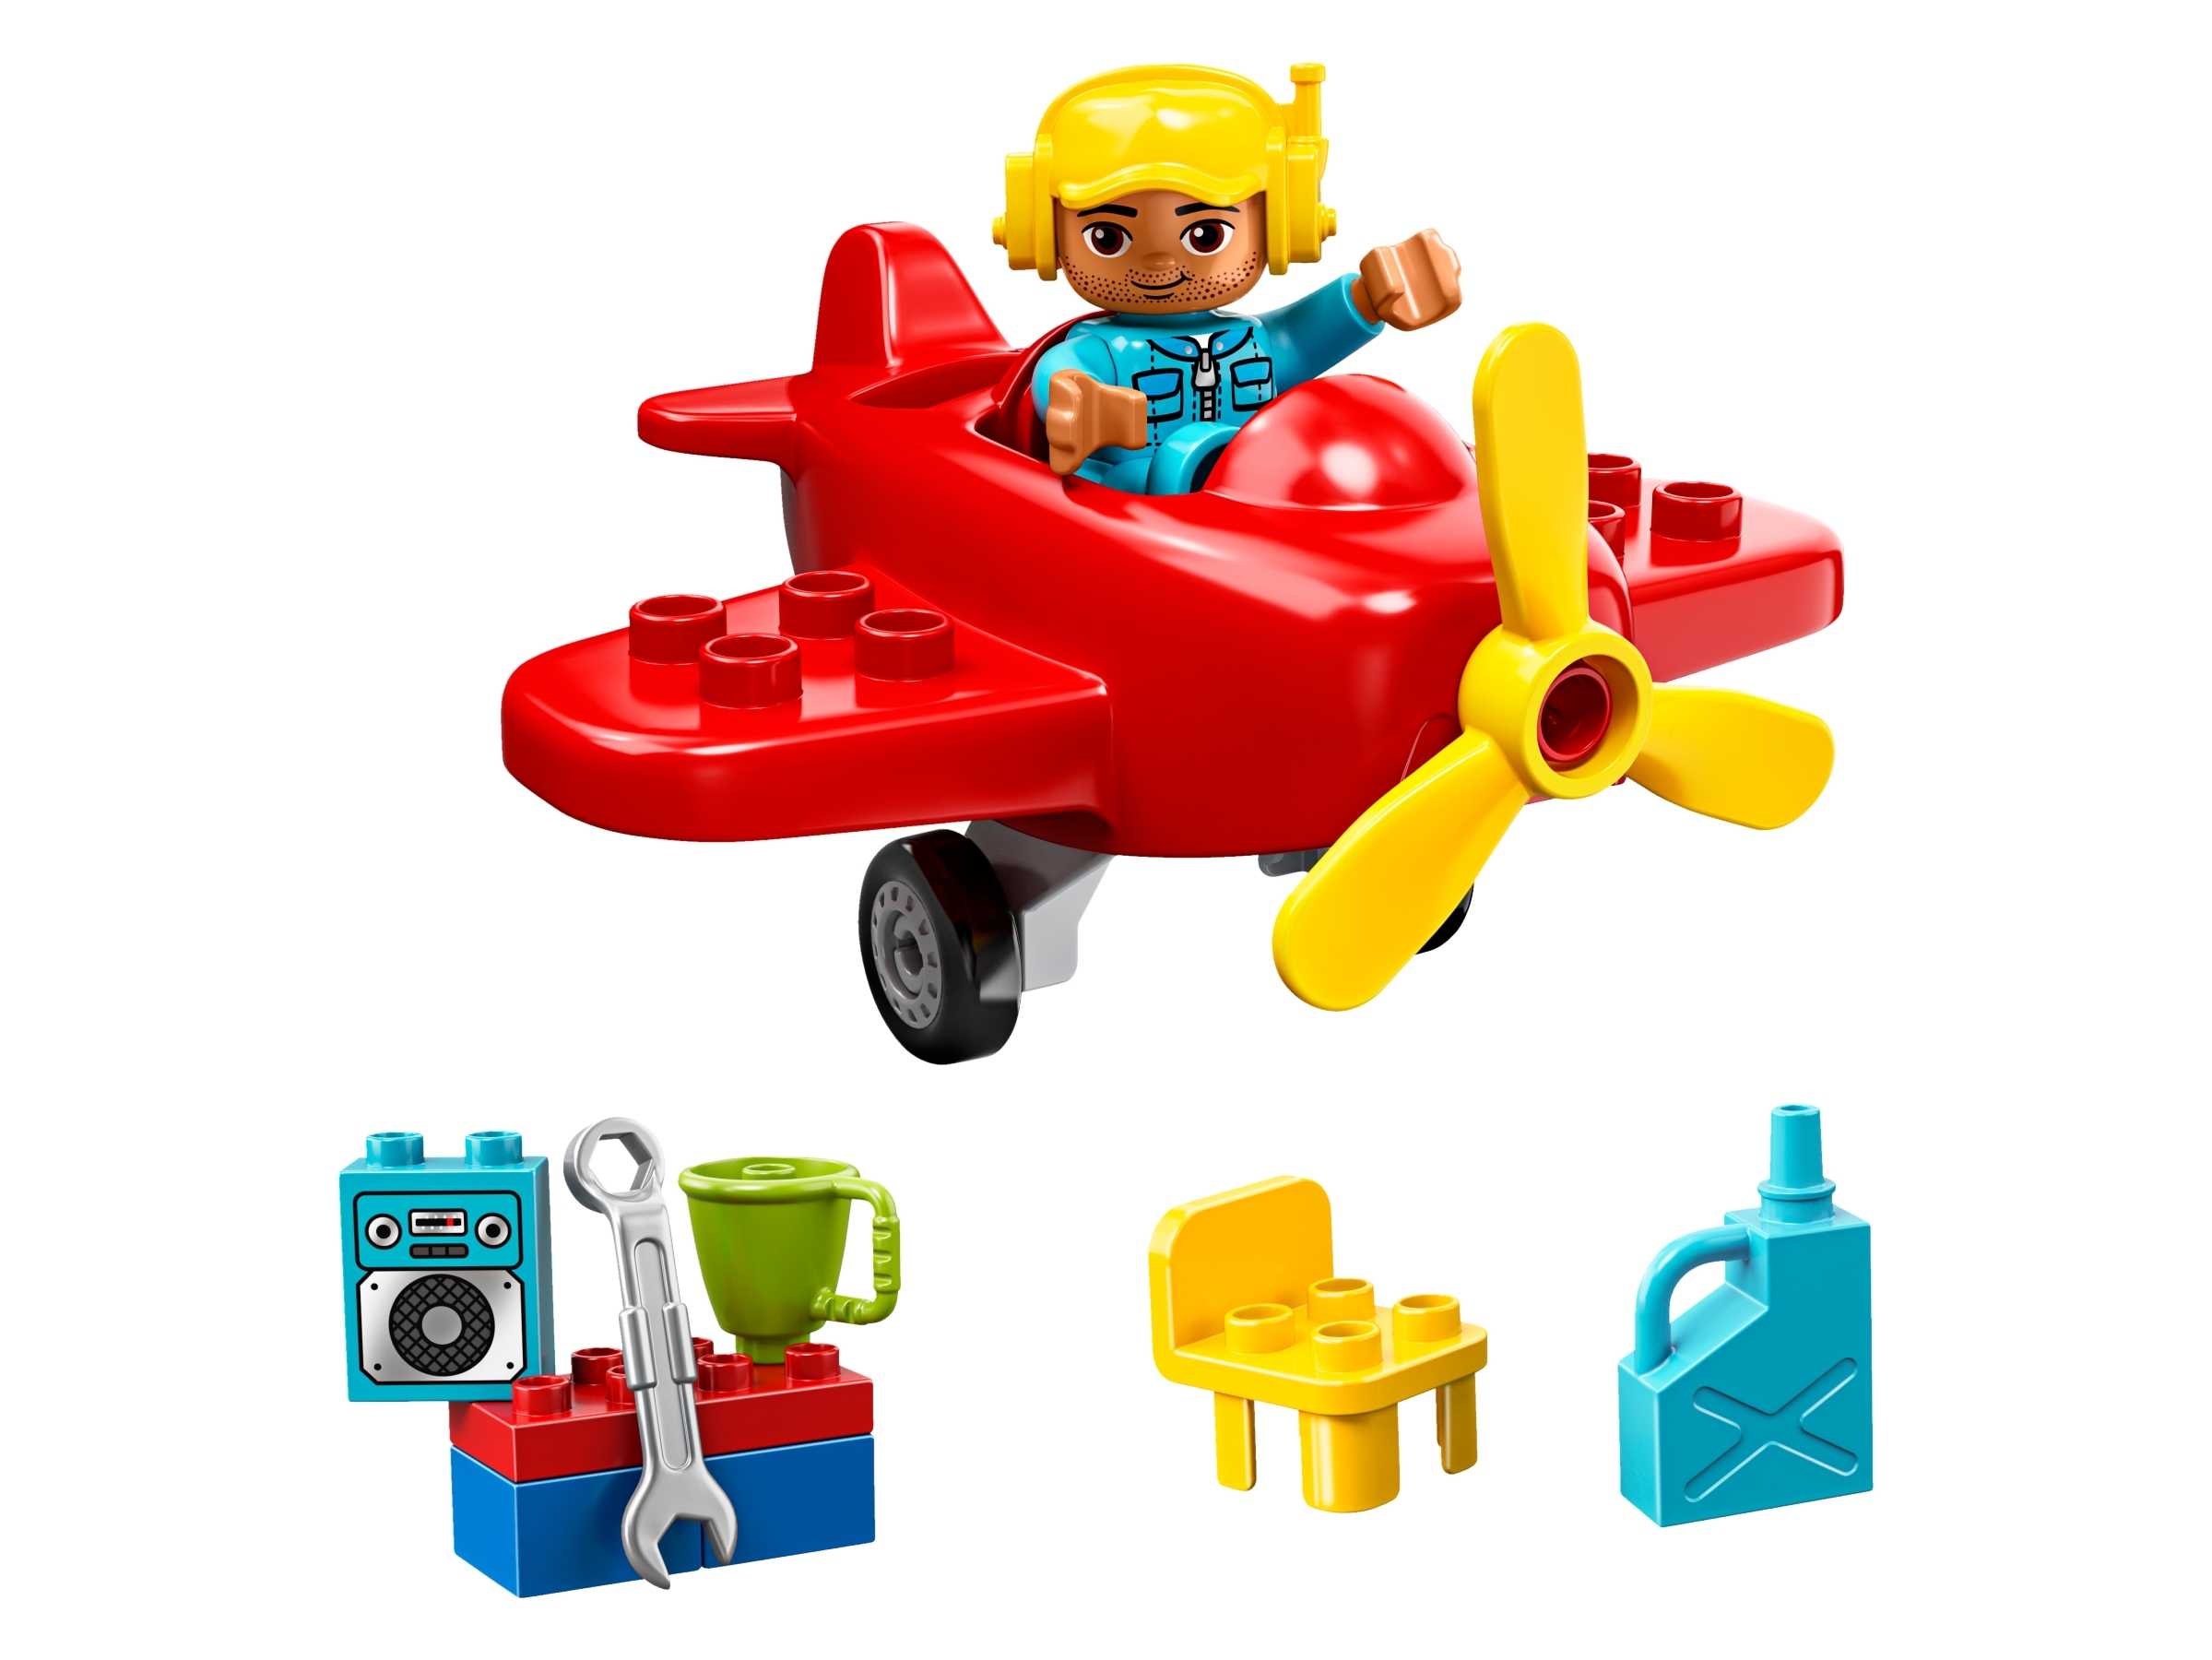 velsignelse høst besøgende Plane 10908 | DUPLO® | Buy online at the Official LEGO® Shop US